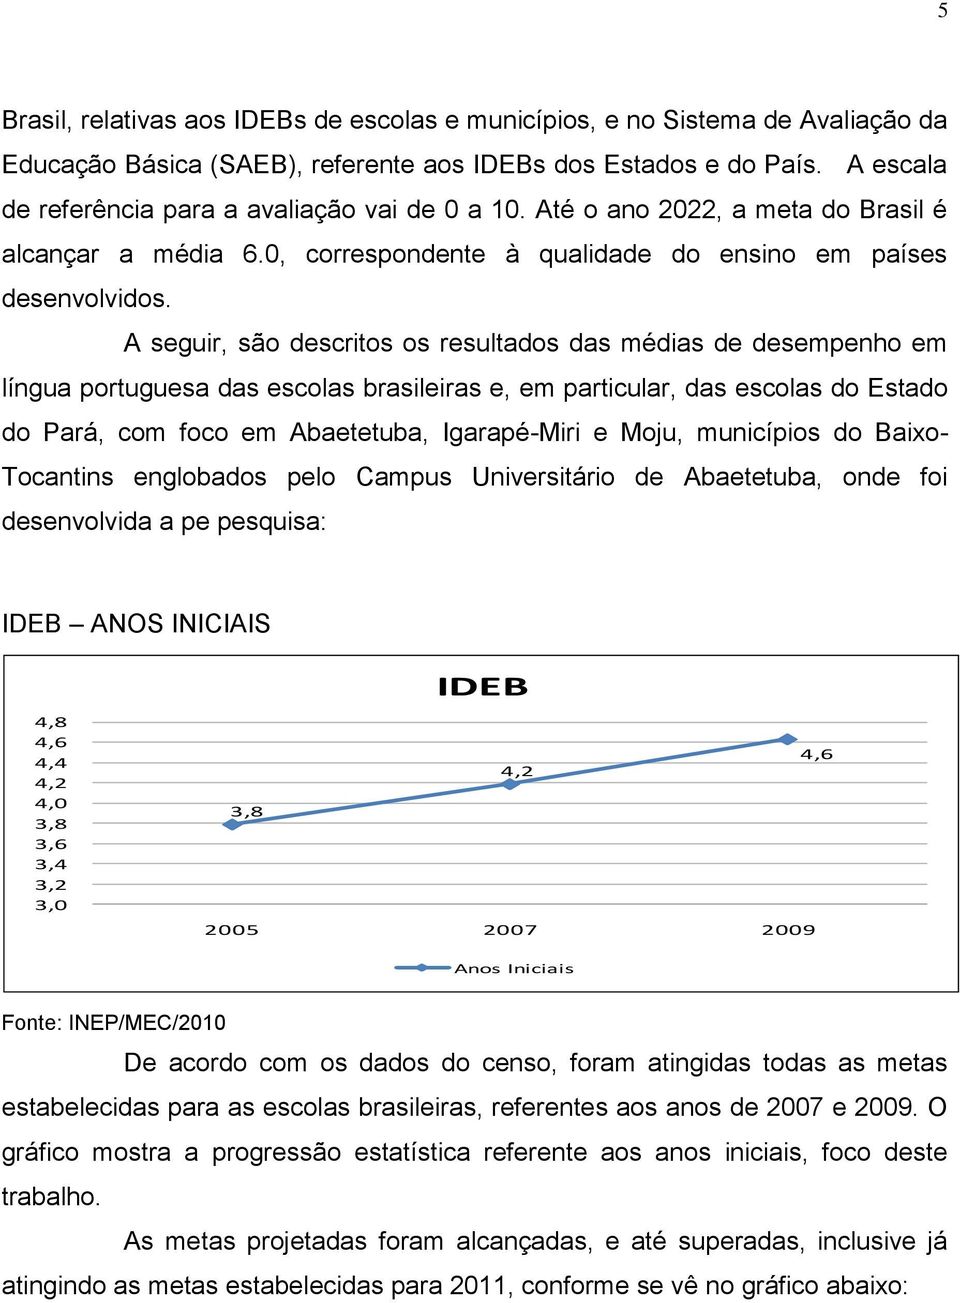 A seguir, são descritos os resultados das médias de desempenho em língua portuguesa das escolas brasileiras e, em particular, das escolas do Estado do Pará, com foco em Abaetetuba, Igarapé-Miri e